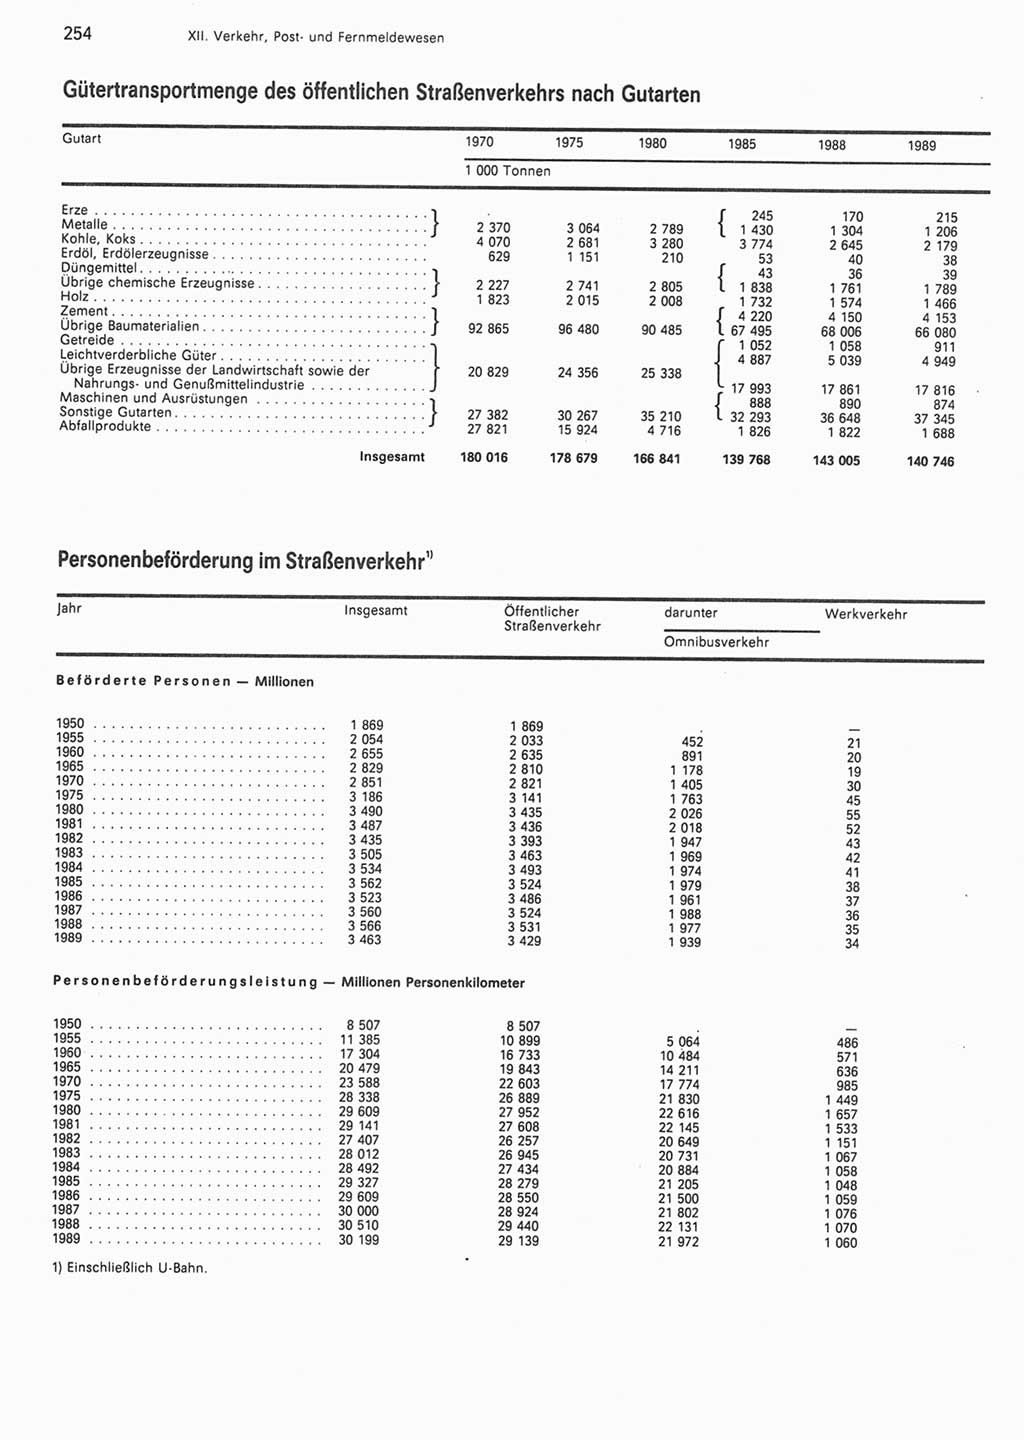 Statistisches Jahrbuch der Deutschen Demokratischen Republik (DDR) 1990, Seite 254 (Stat. Jb. DDR 1990, S. 254)